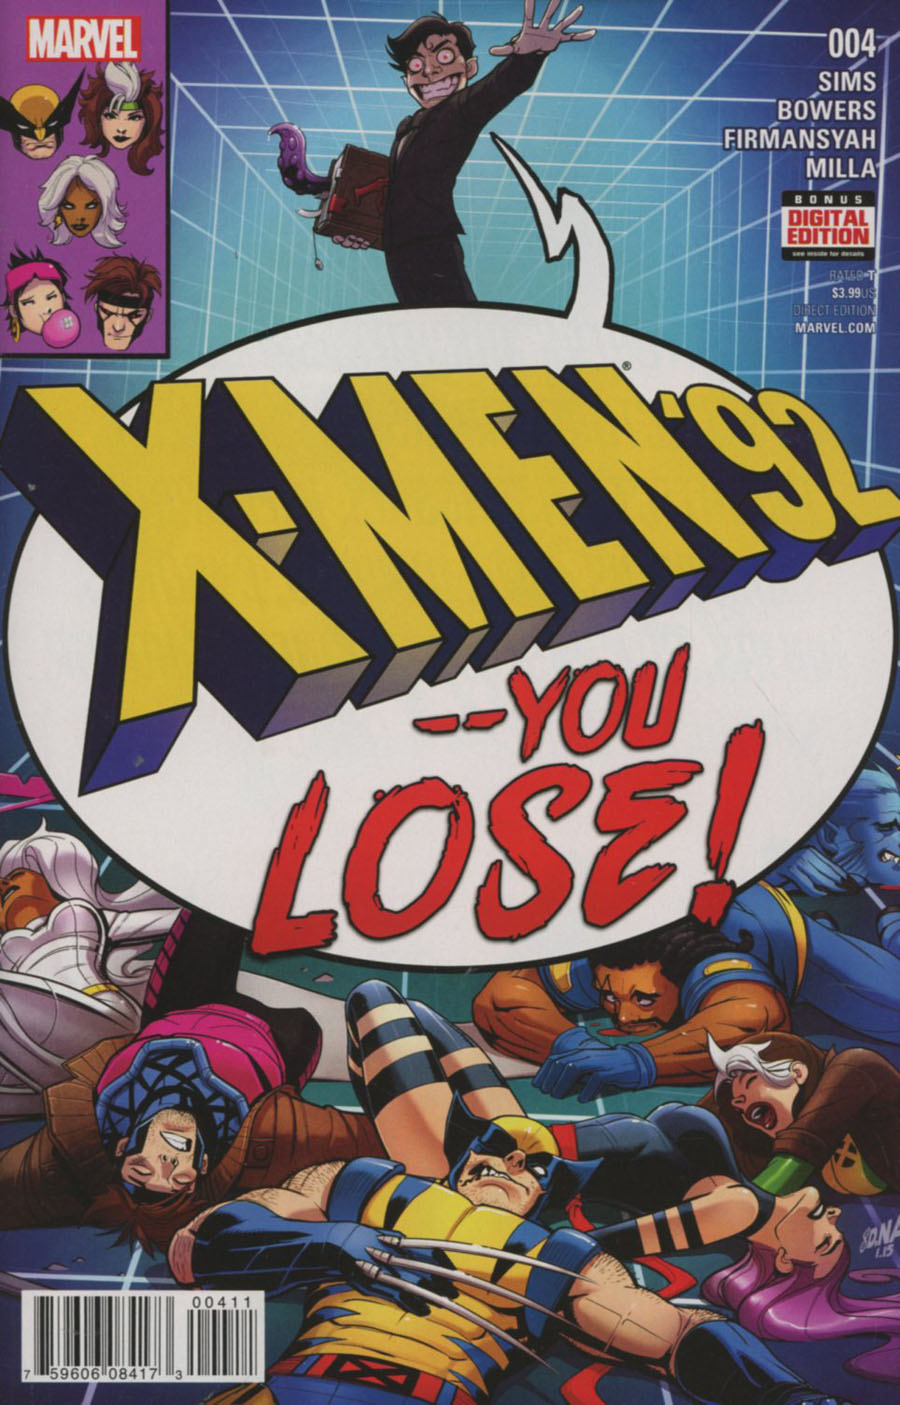 X-Men 92 Vol 2 #4